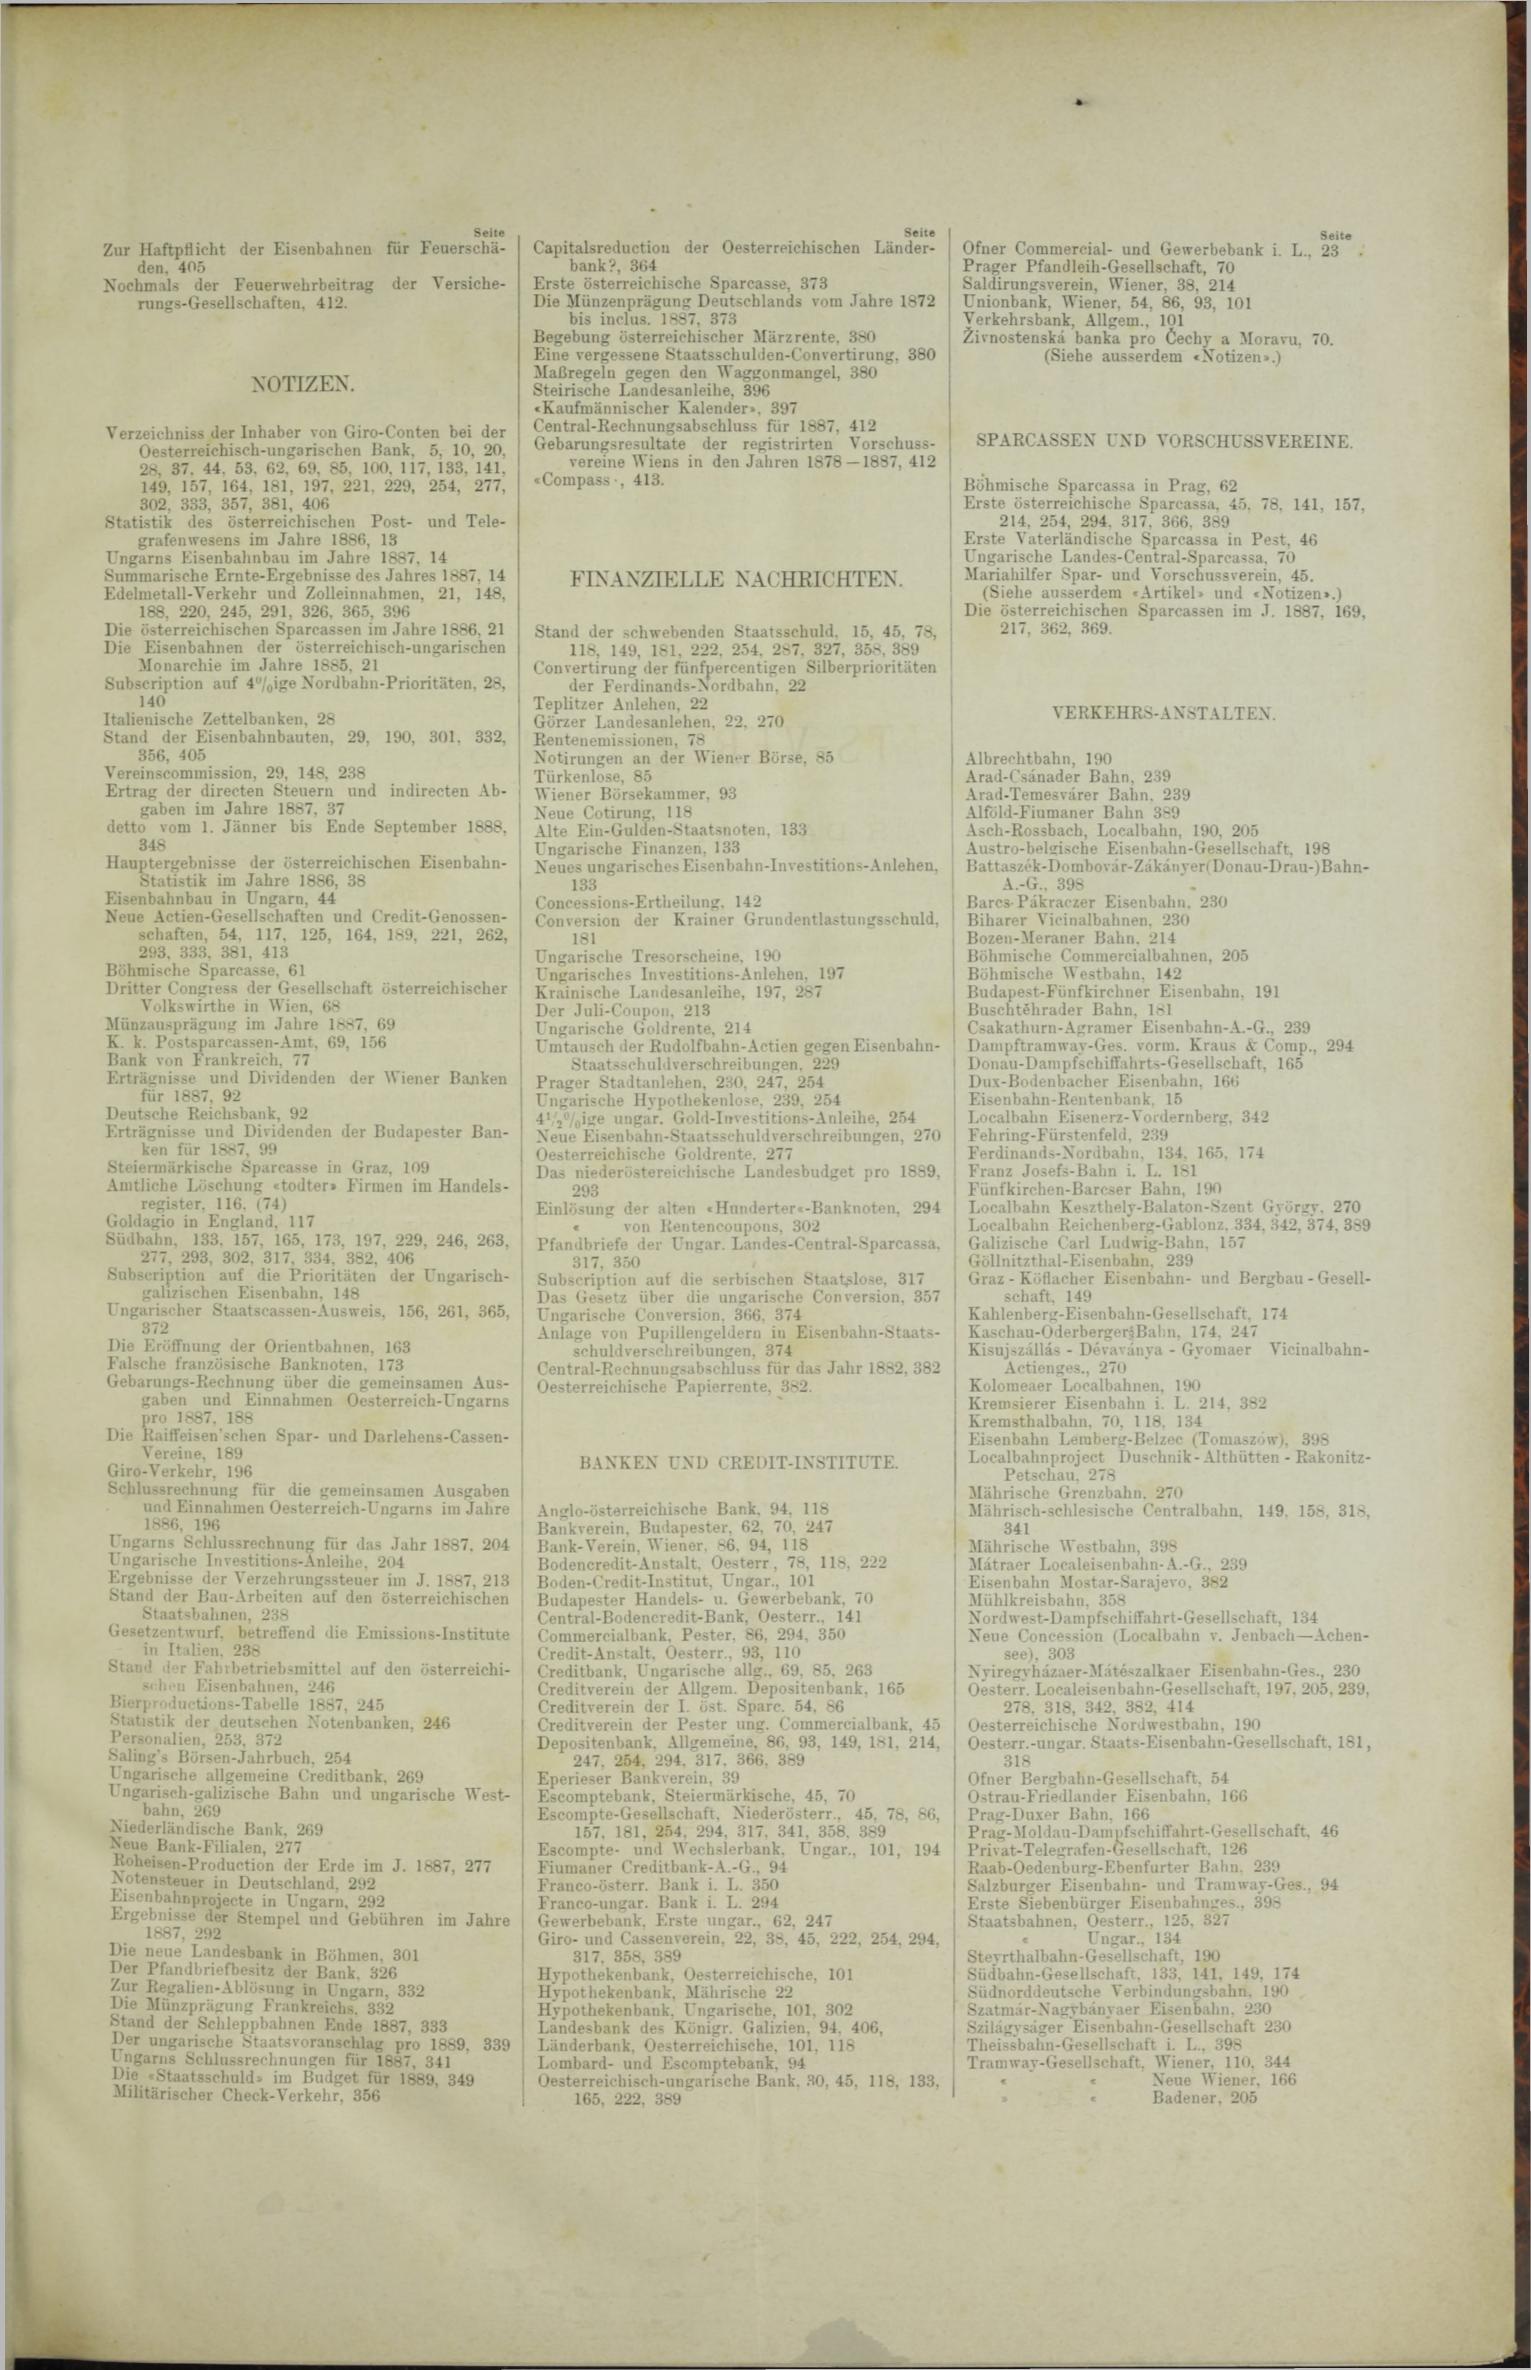 Der Tresor 08.03.1888 - Seite 11